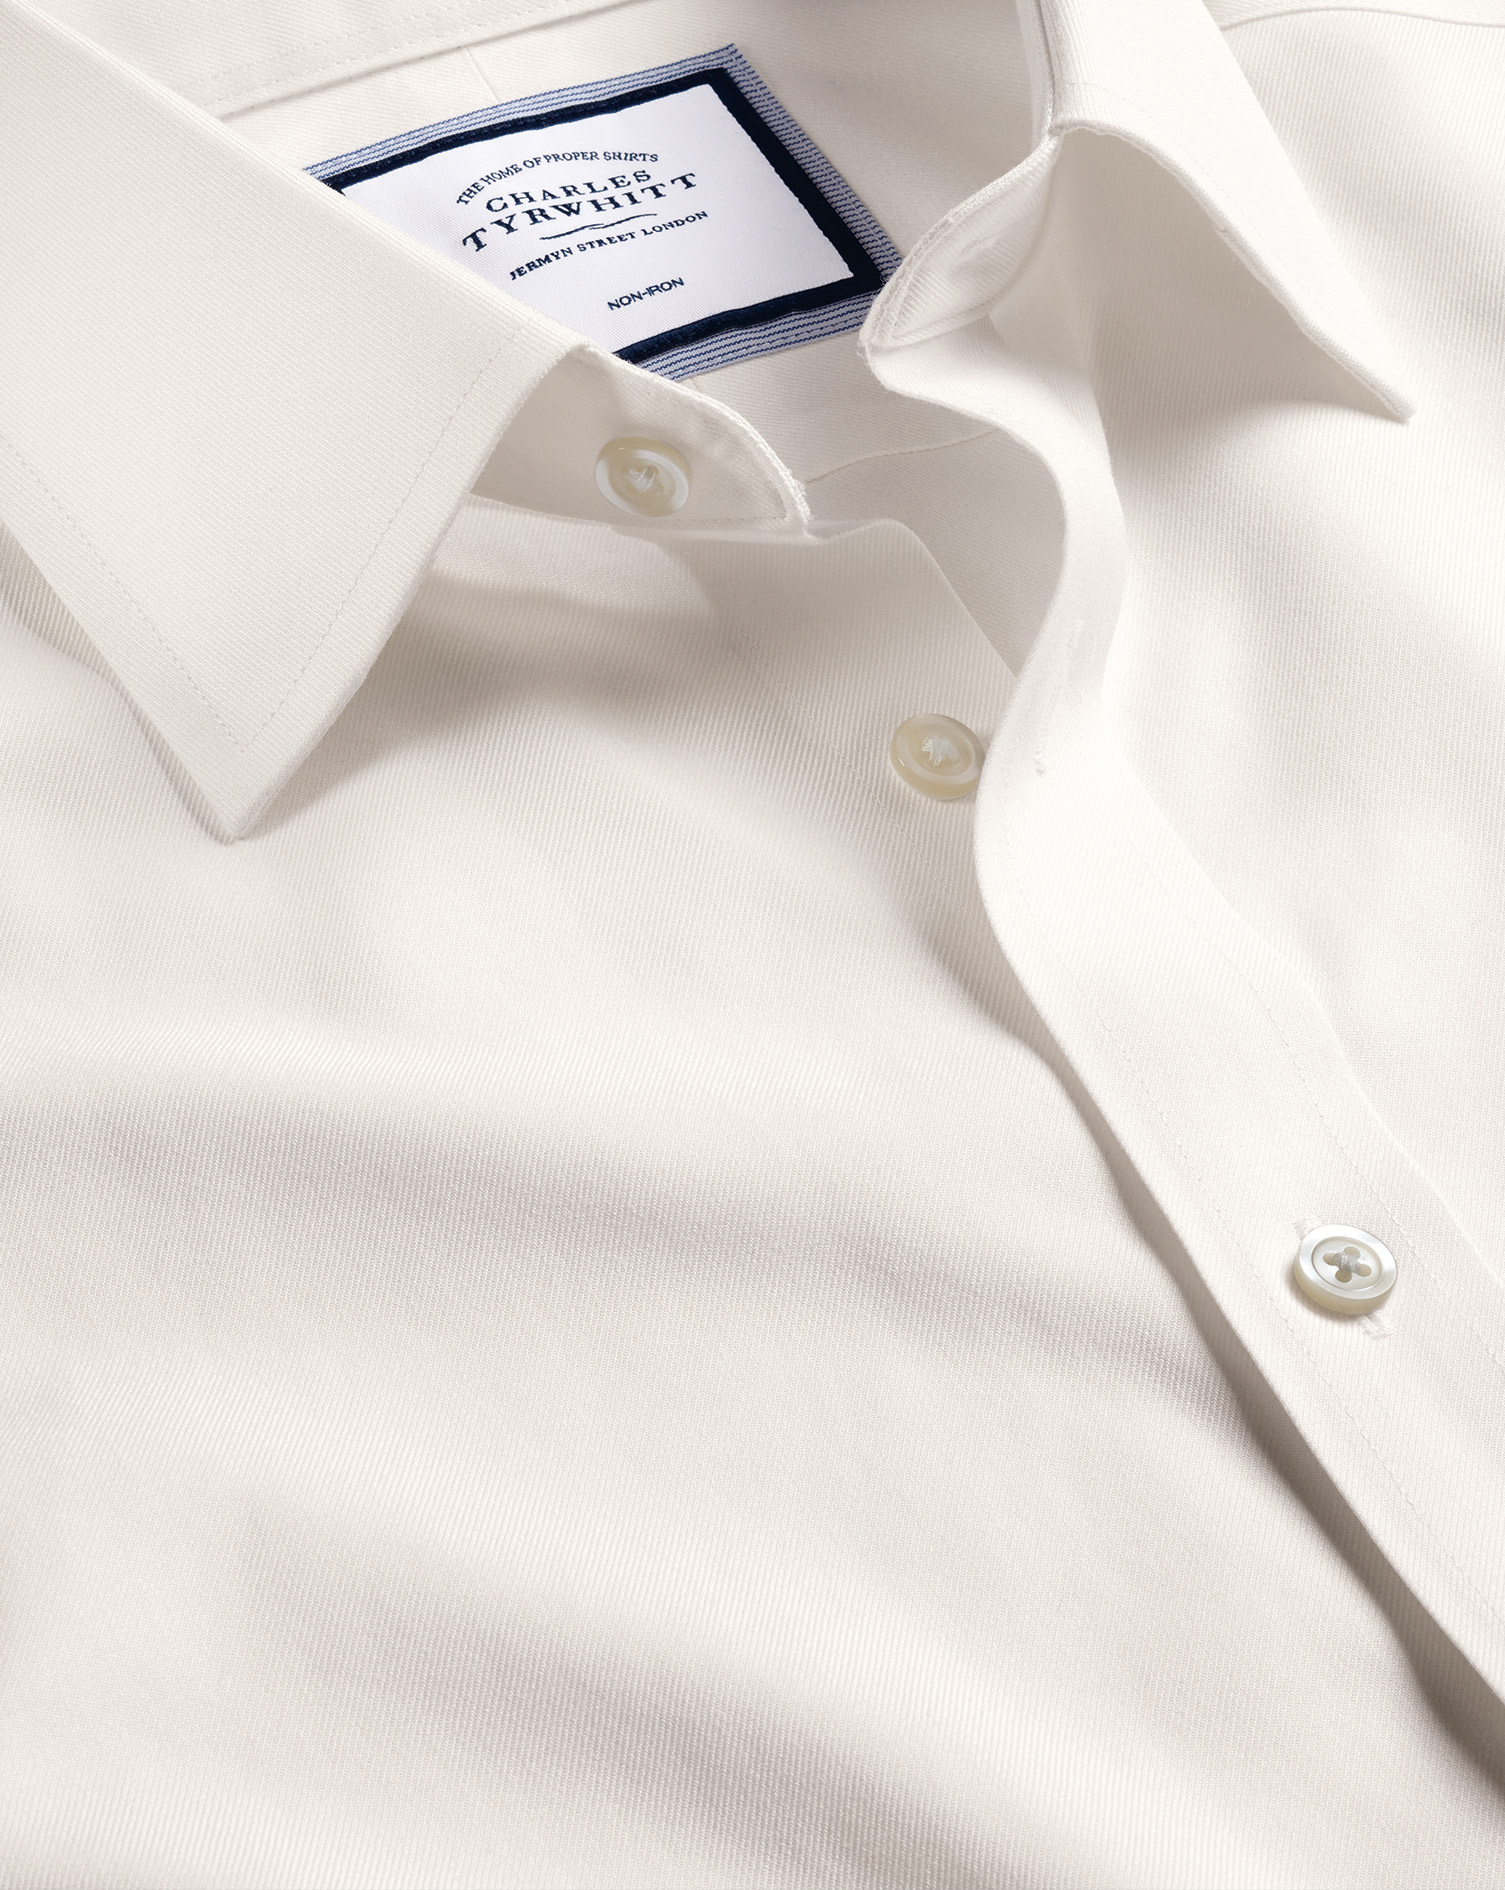 Non-Iron Twill Cotton Dress Shirt - Ivory Single Cuff Size 17/37
